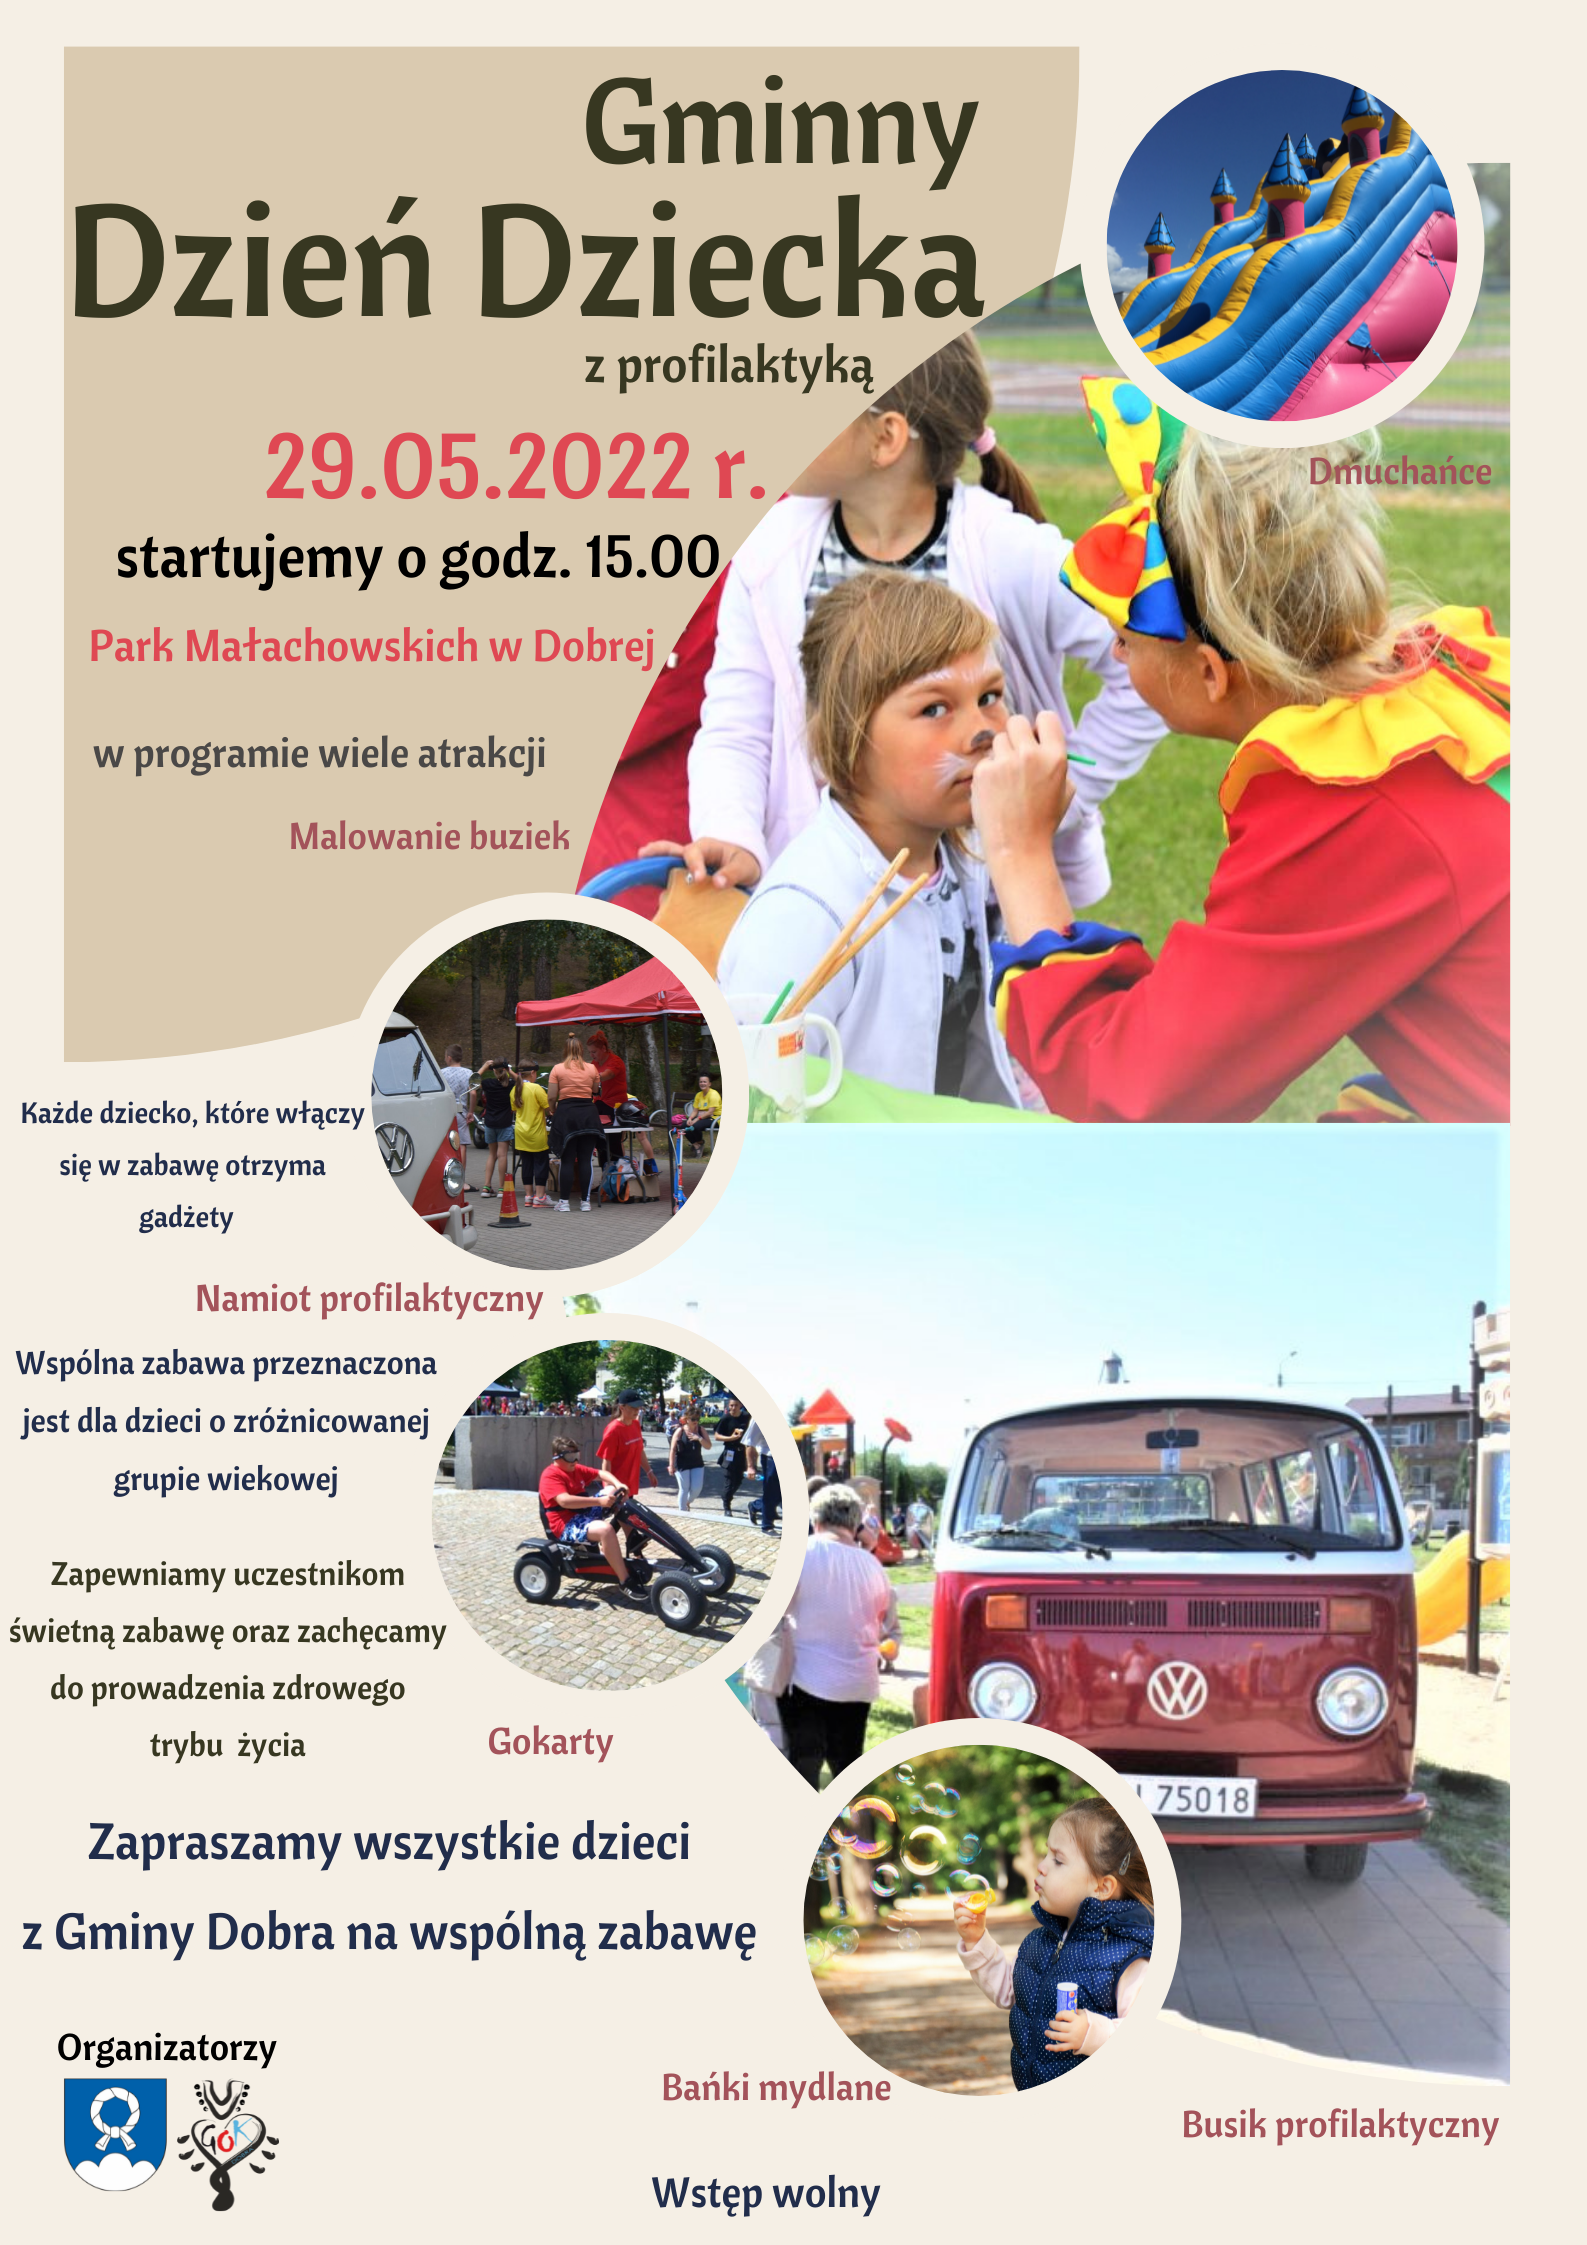 Gminny Dzień Dziecka w Dobrej - 29.05.2022 r.